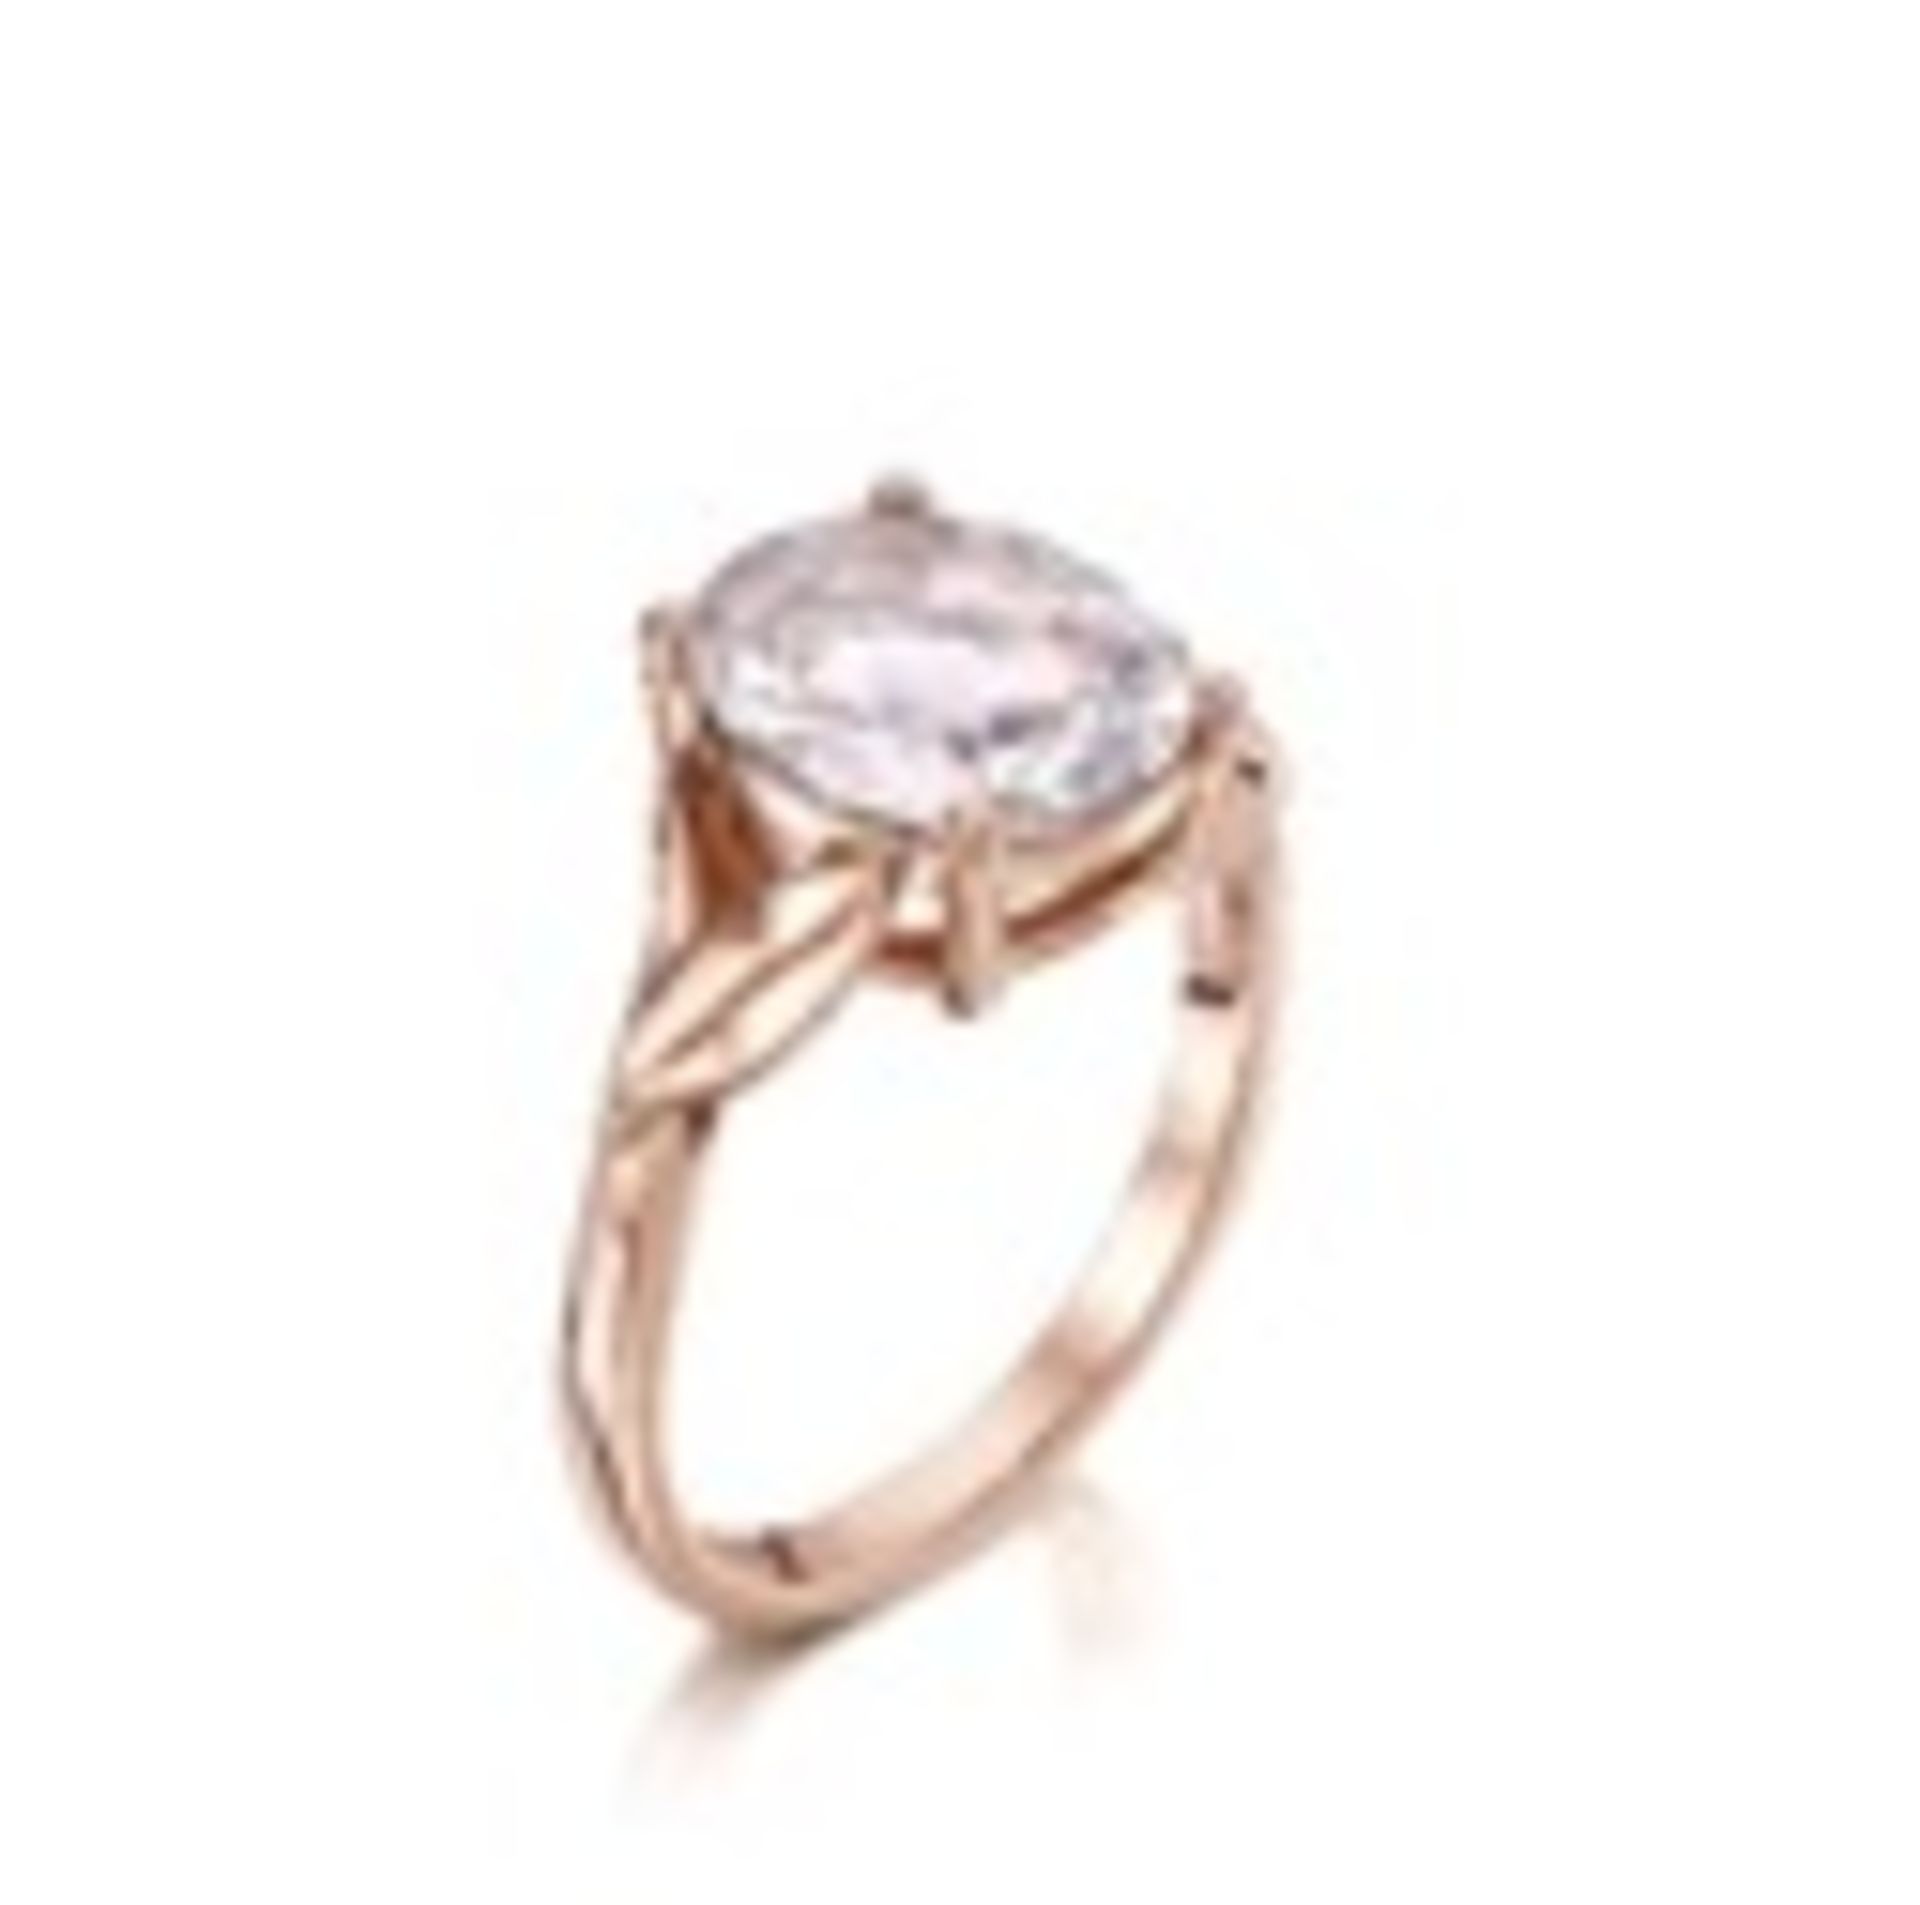 Pink quartz & 9ct rose gold leaf ring Re-modelled ring 4.12 grams